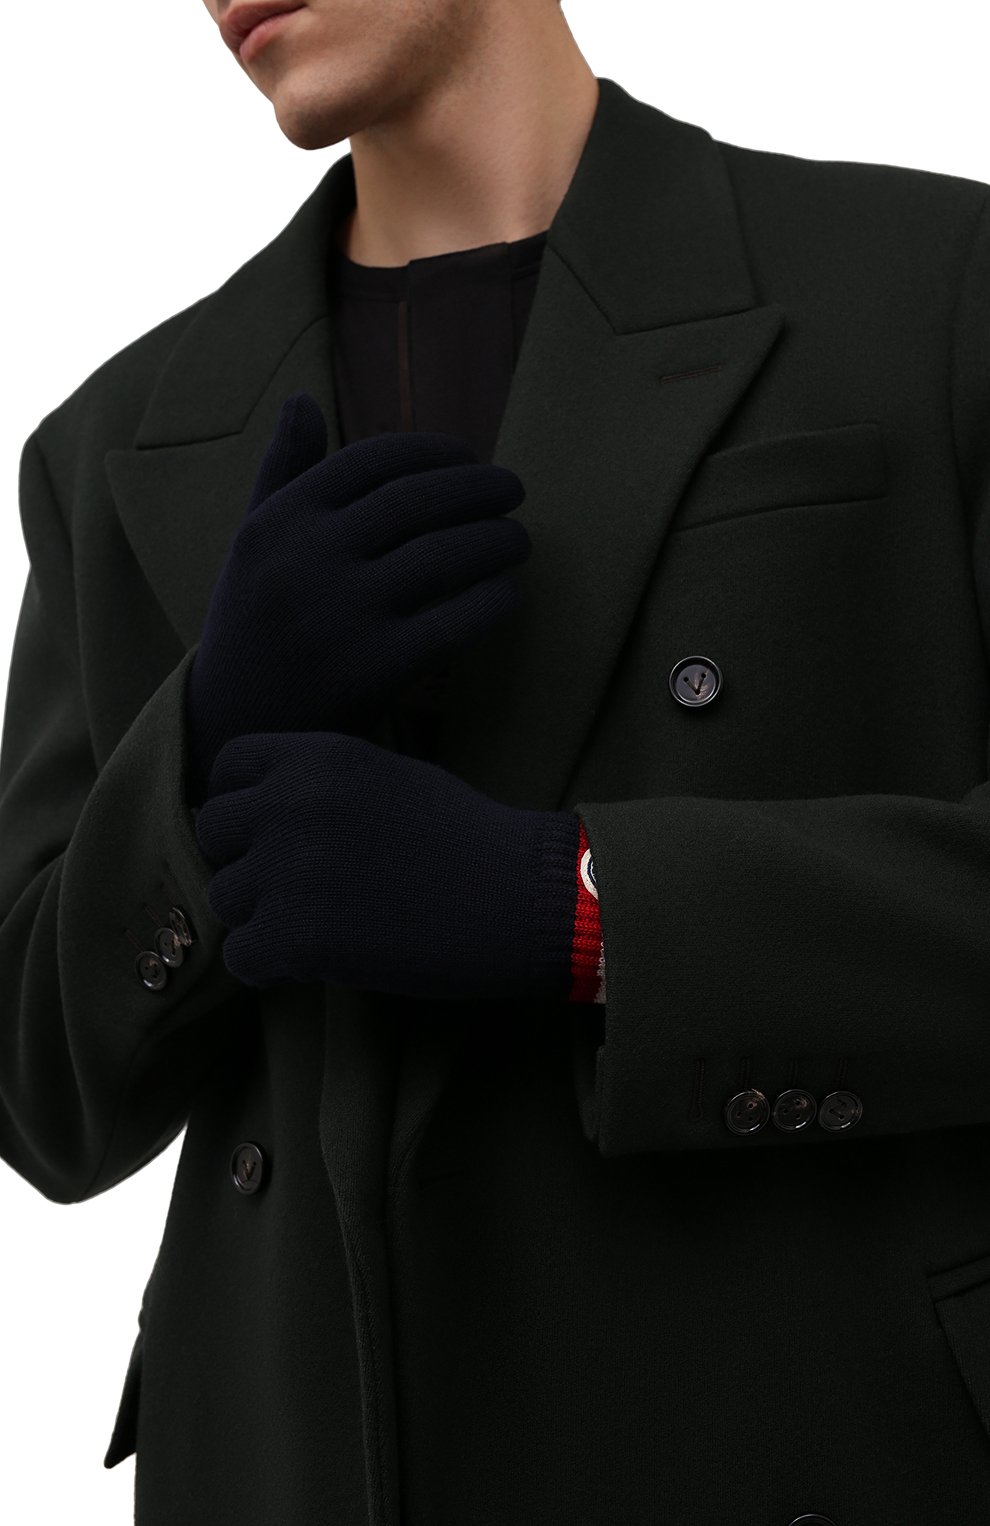 Мужские шерстяные  перчатки MONCLER темно-синего цвета, арт. G2-091-3A000-04-A9575 | Фото 2 (Материал: Текстиль, Шерсть; Кросс-КТ: Трикотаж)